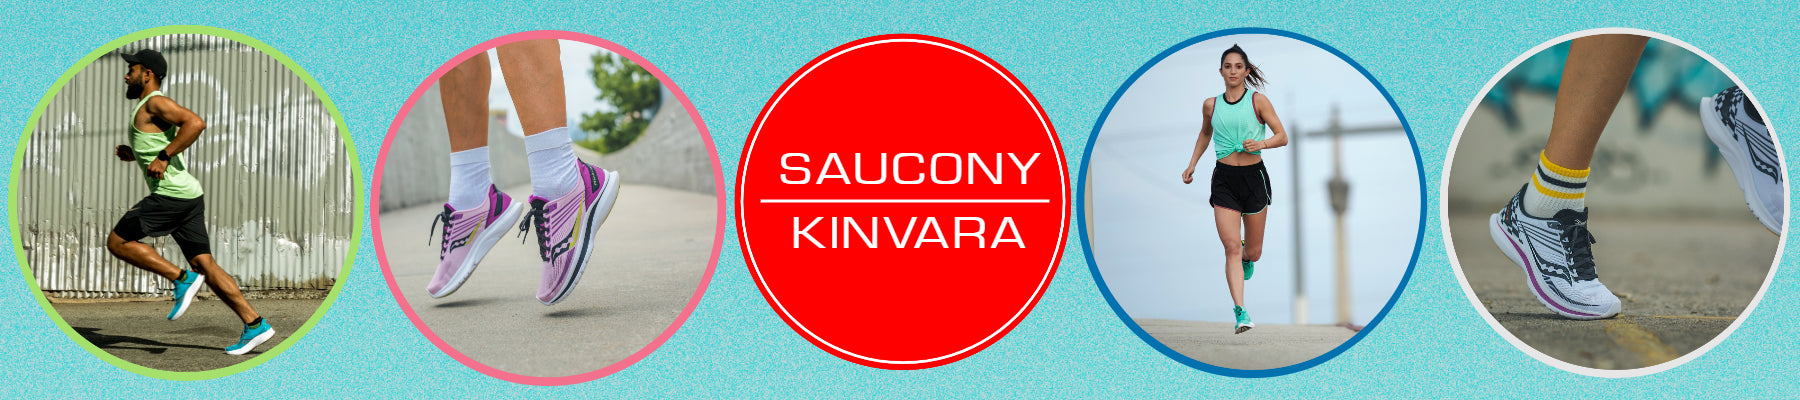 Saucony Kinvara